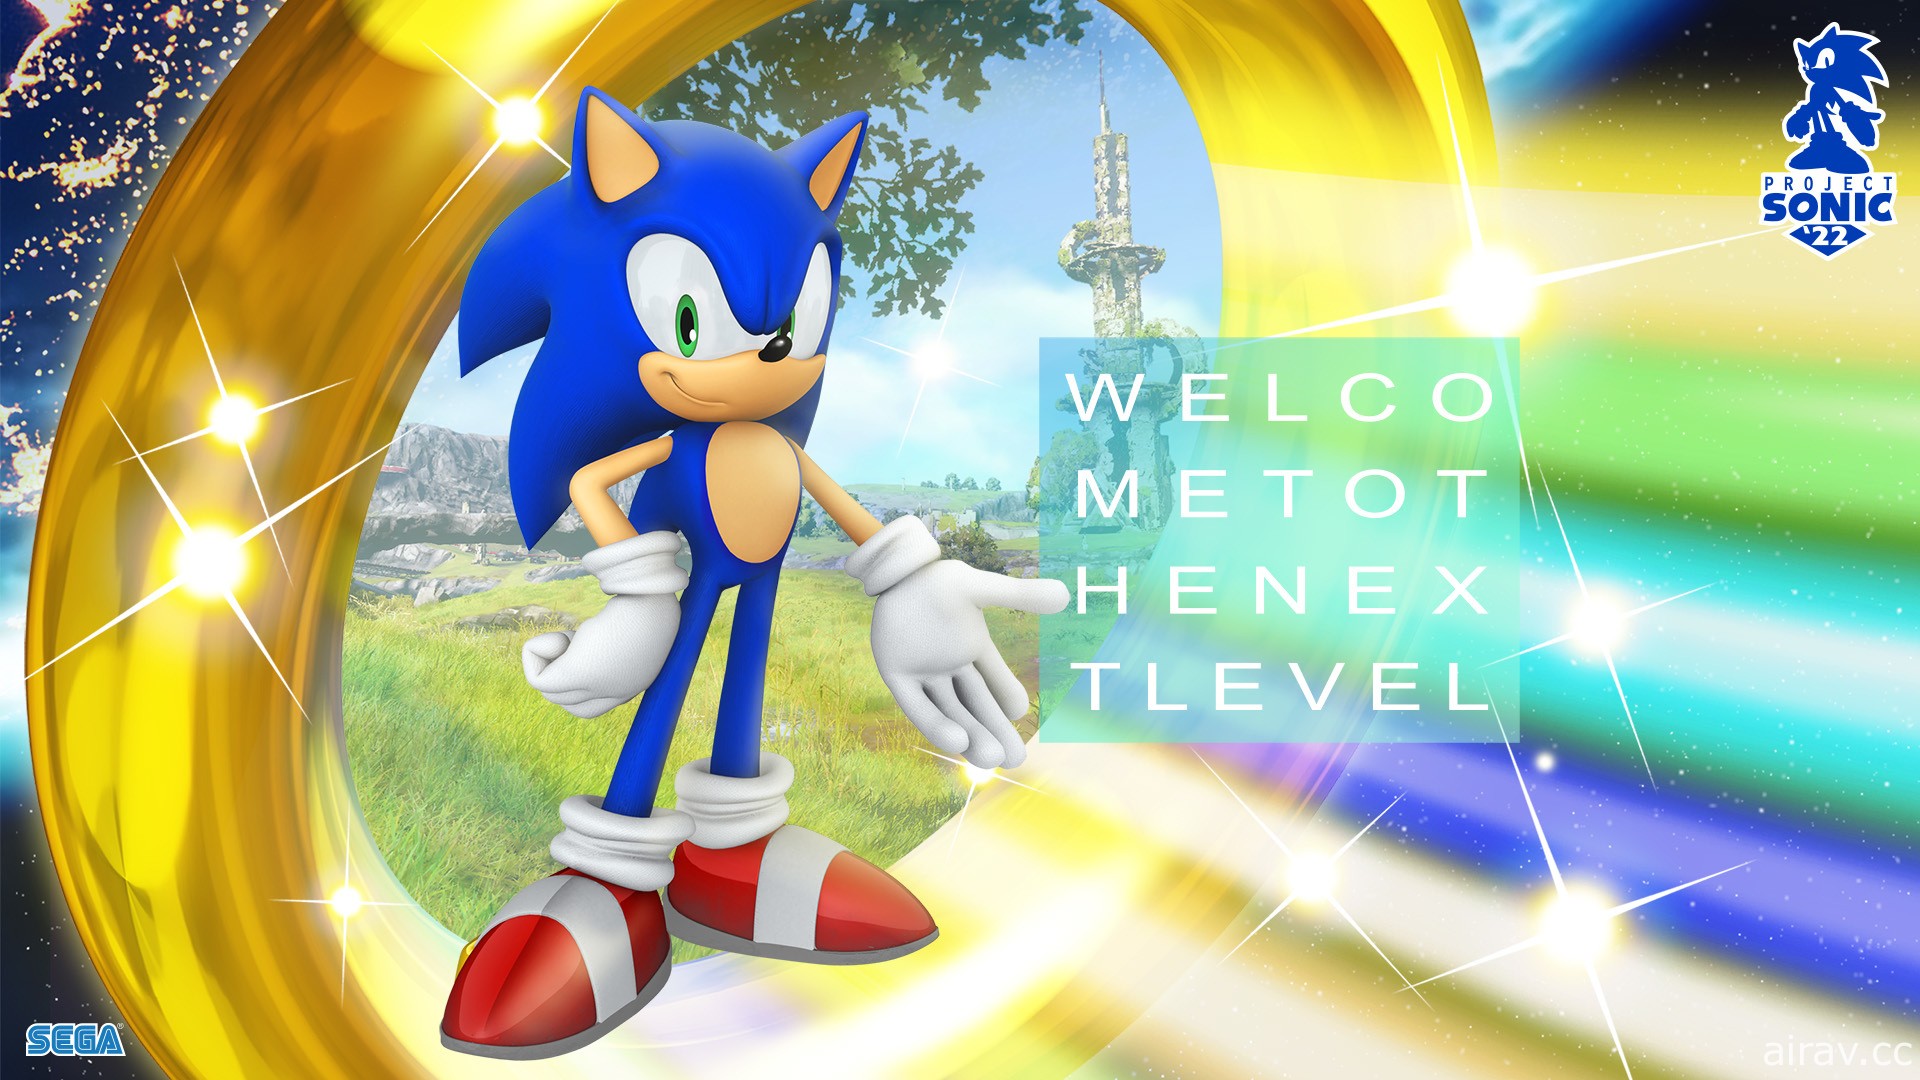 索尼克“Project Sonic ‘22”计画启动 公开主视觉＆LOGO 设计